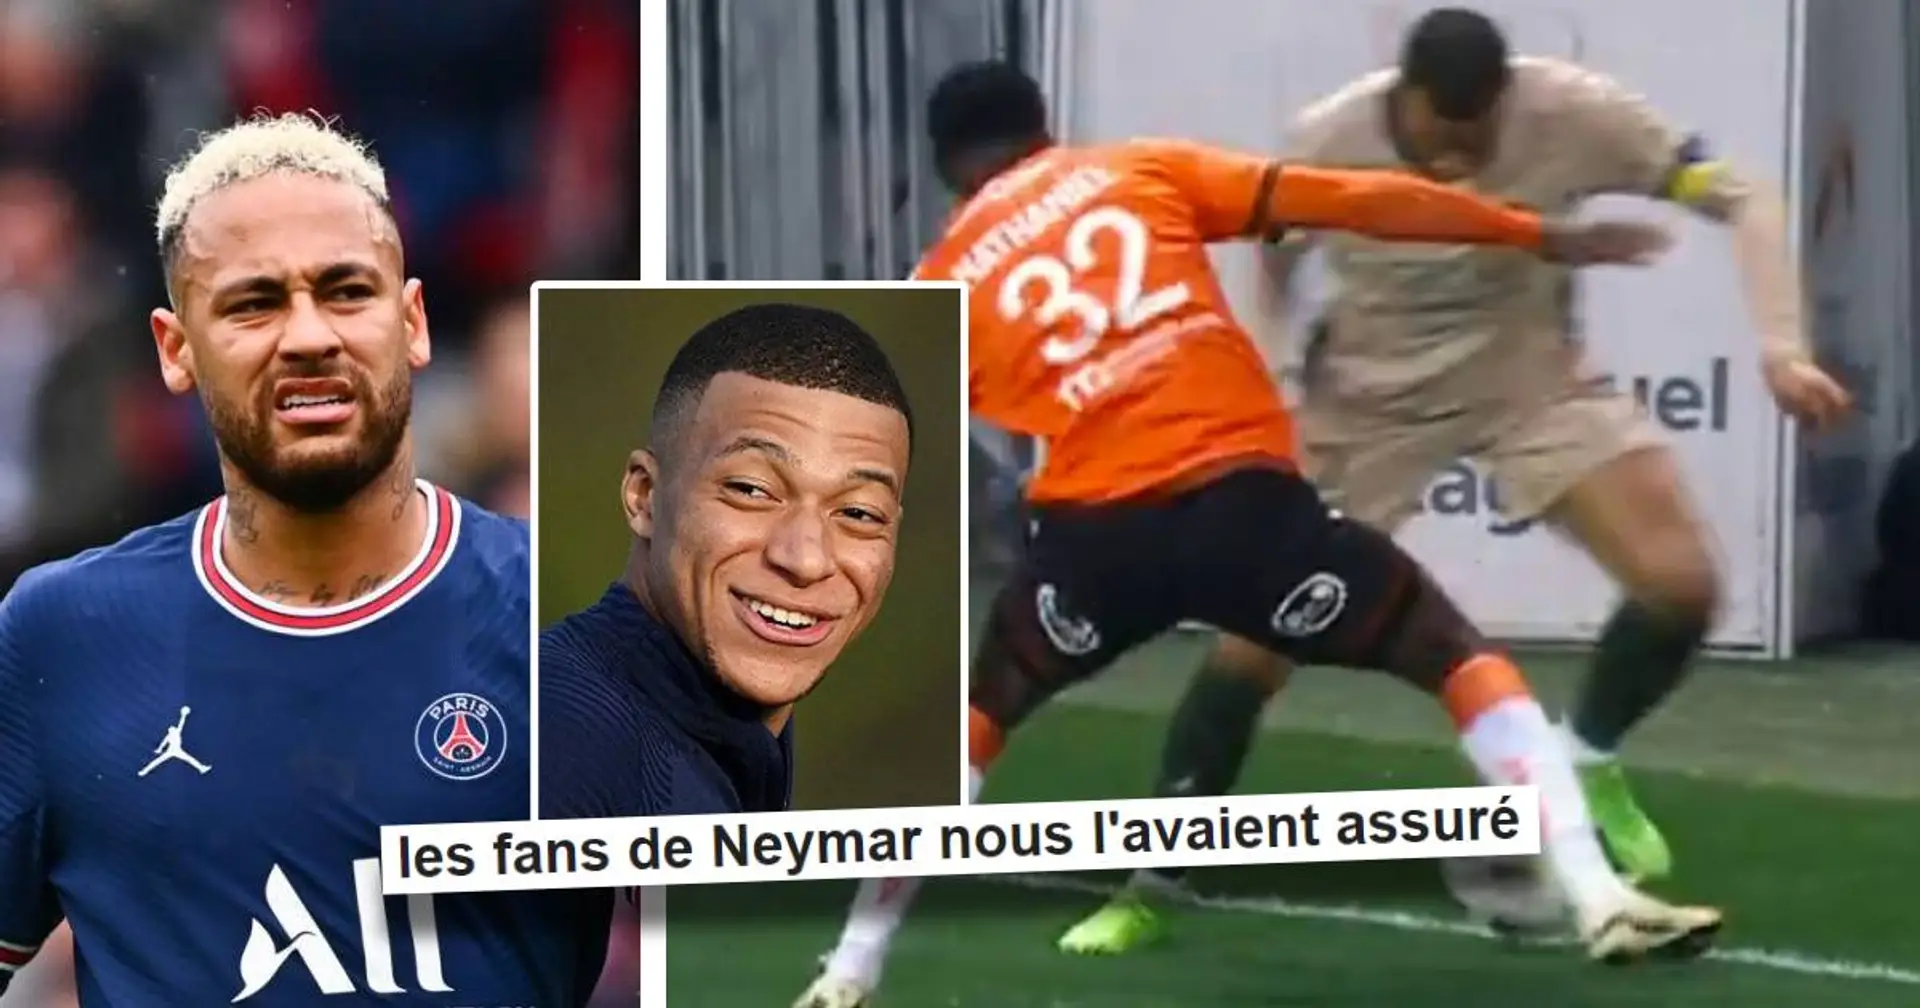 "Le tout droit Mbappé" : Le geste technique hallucinant de Mbappé vs Lorient fait taire les détracteurs